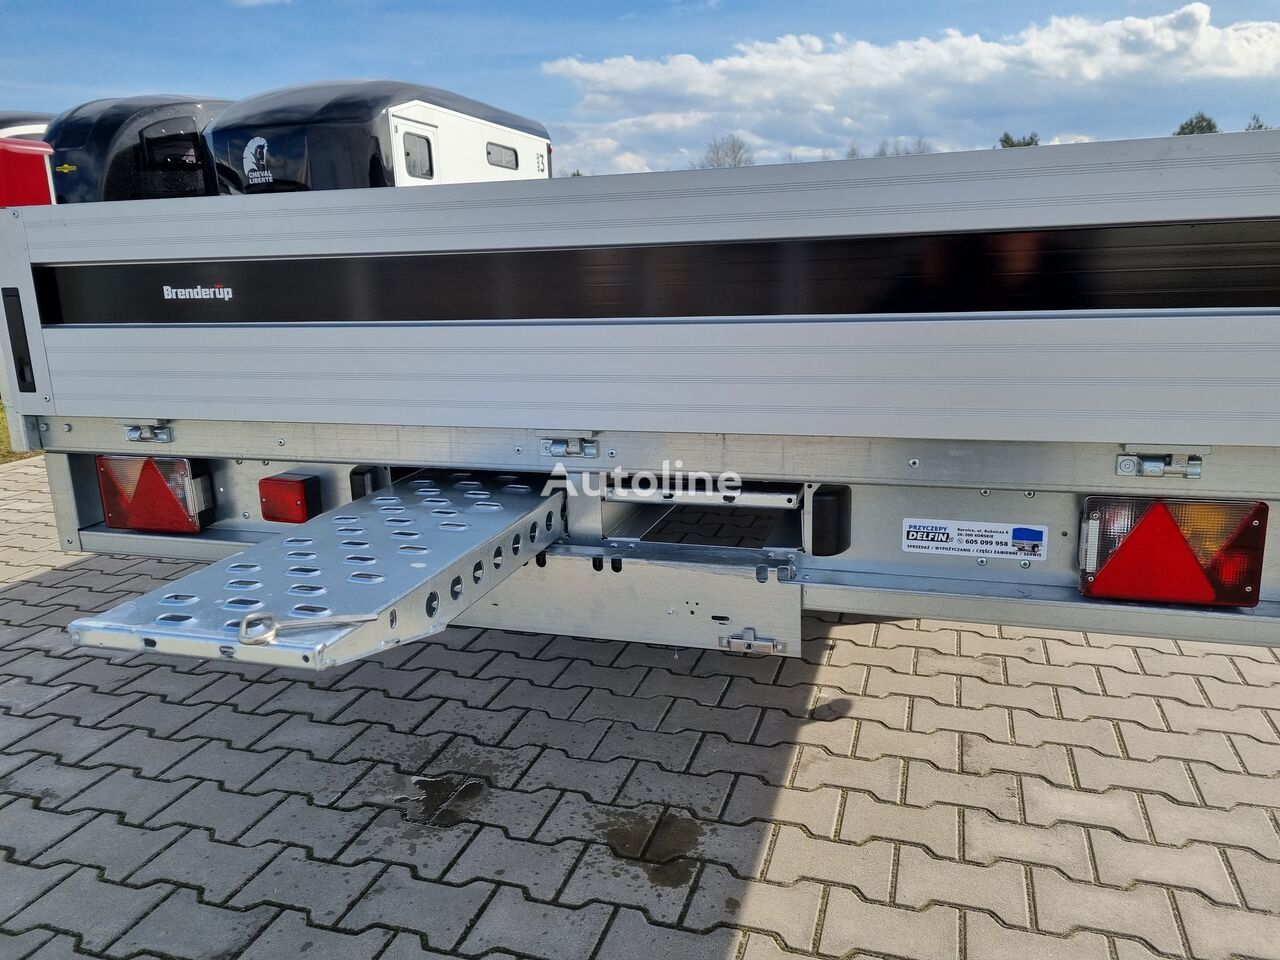 Nowy Przyczepa platforma/ Skrzyniowa Brenderup 5520 WATB 3,5T GVW 517x204 cm 5m long trailer platform: zdjęcie 22